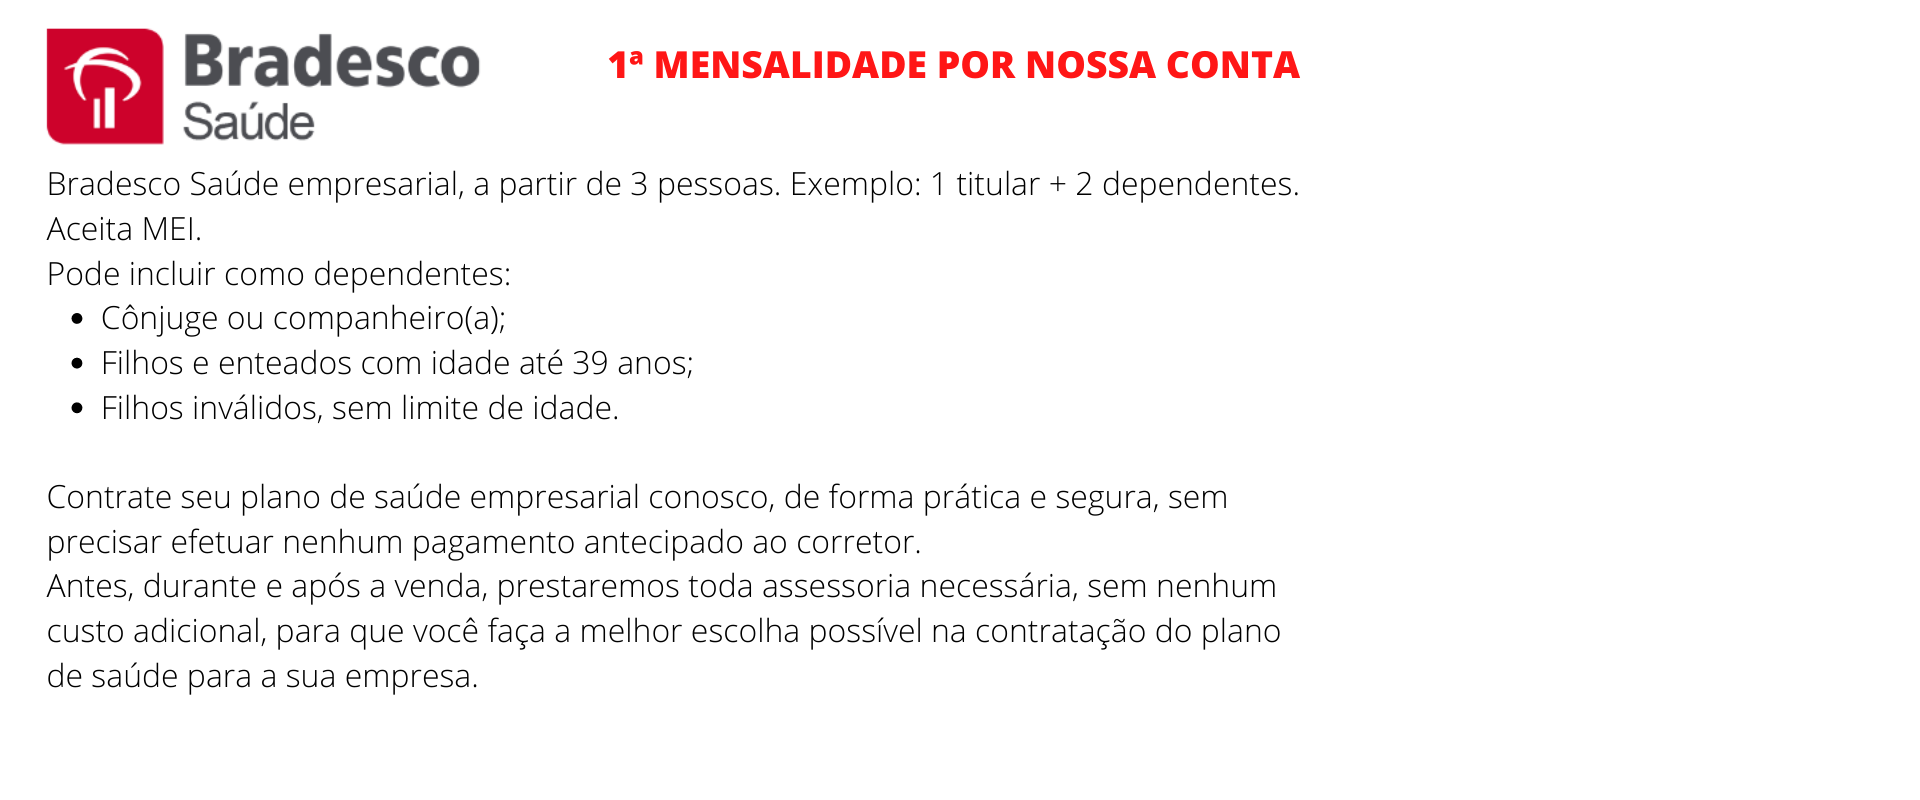 Bradesco Saúde Empresarial - Cosmópolis 